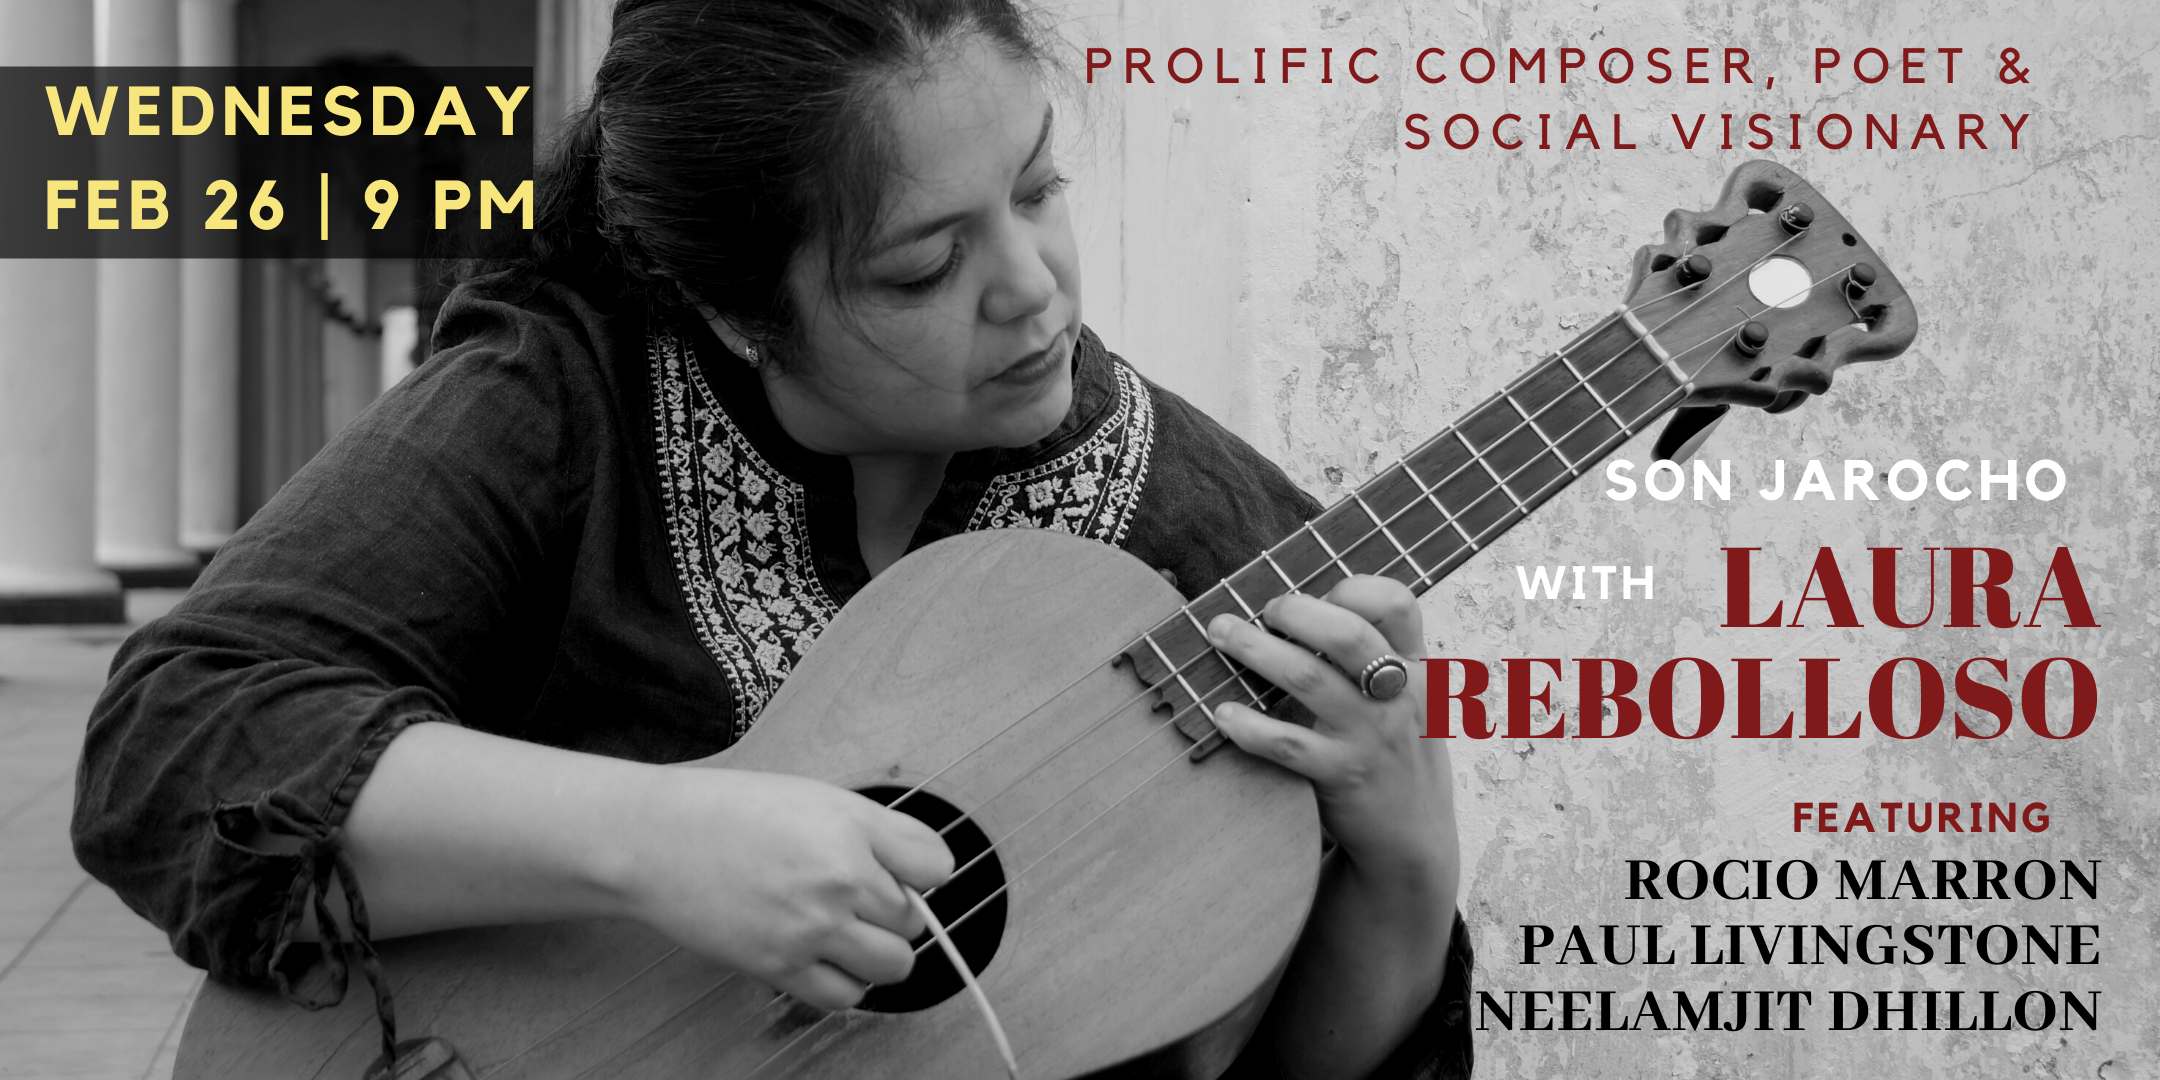 Son Jarocho | Laura Rebolloso with violin, sitar and tabla musicians ...